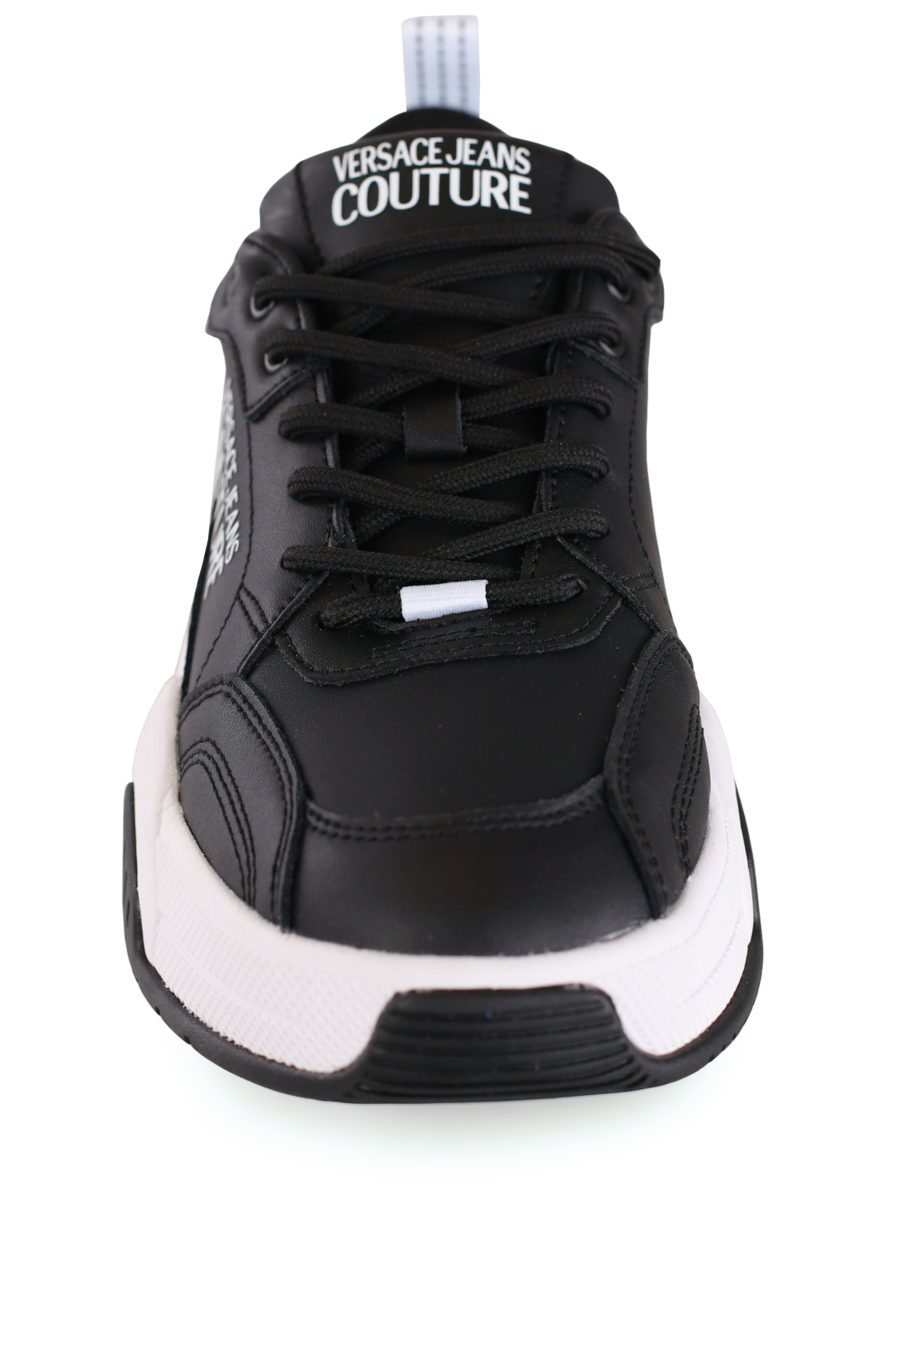 Zapatillas negras con suela blanca - IMG 8299 copia